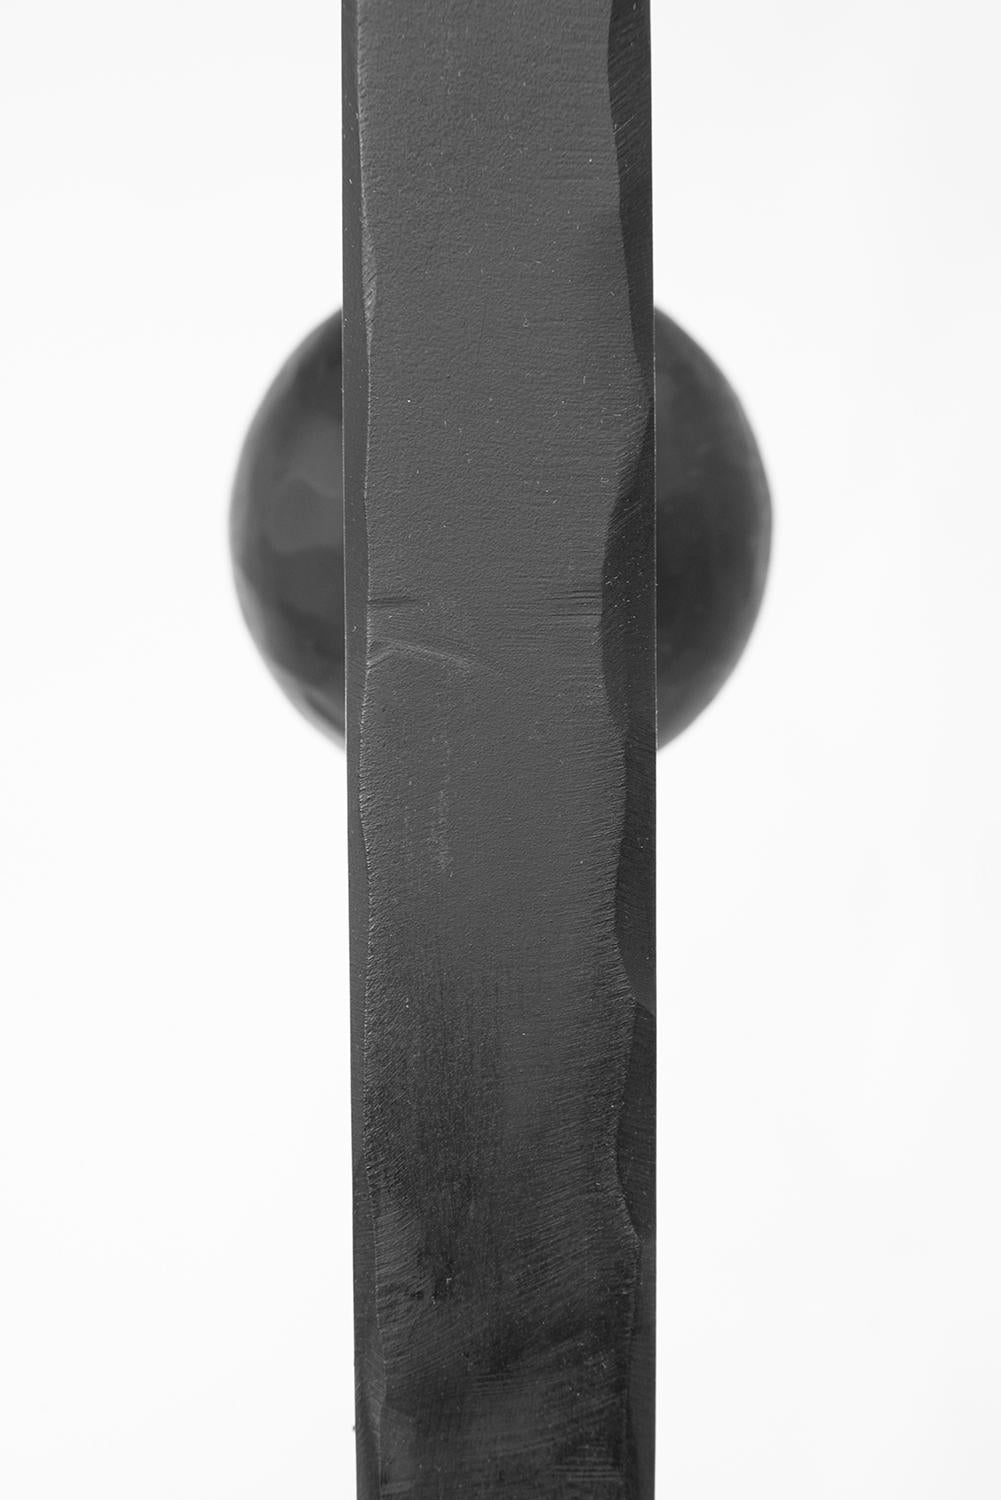 Coat Rack Sculptural Modern Spherical Geometric Handmade Carved Blackened Steel For Sale 2